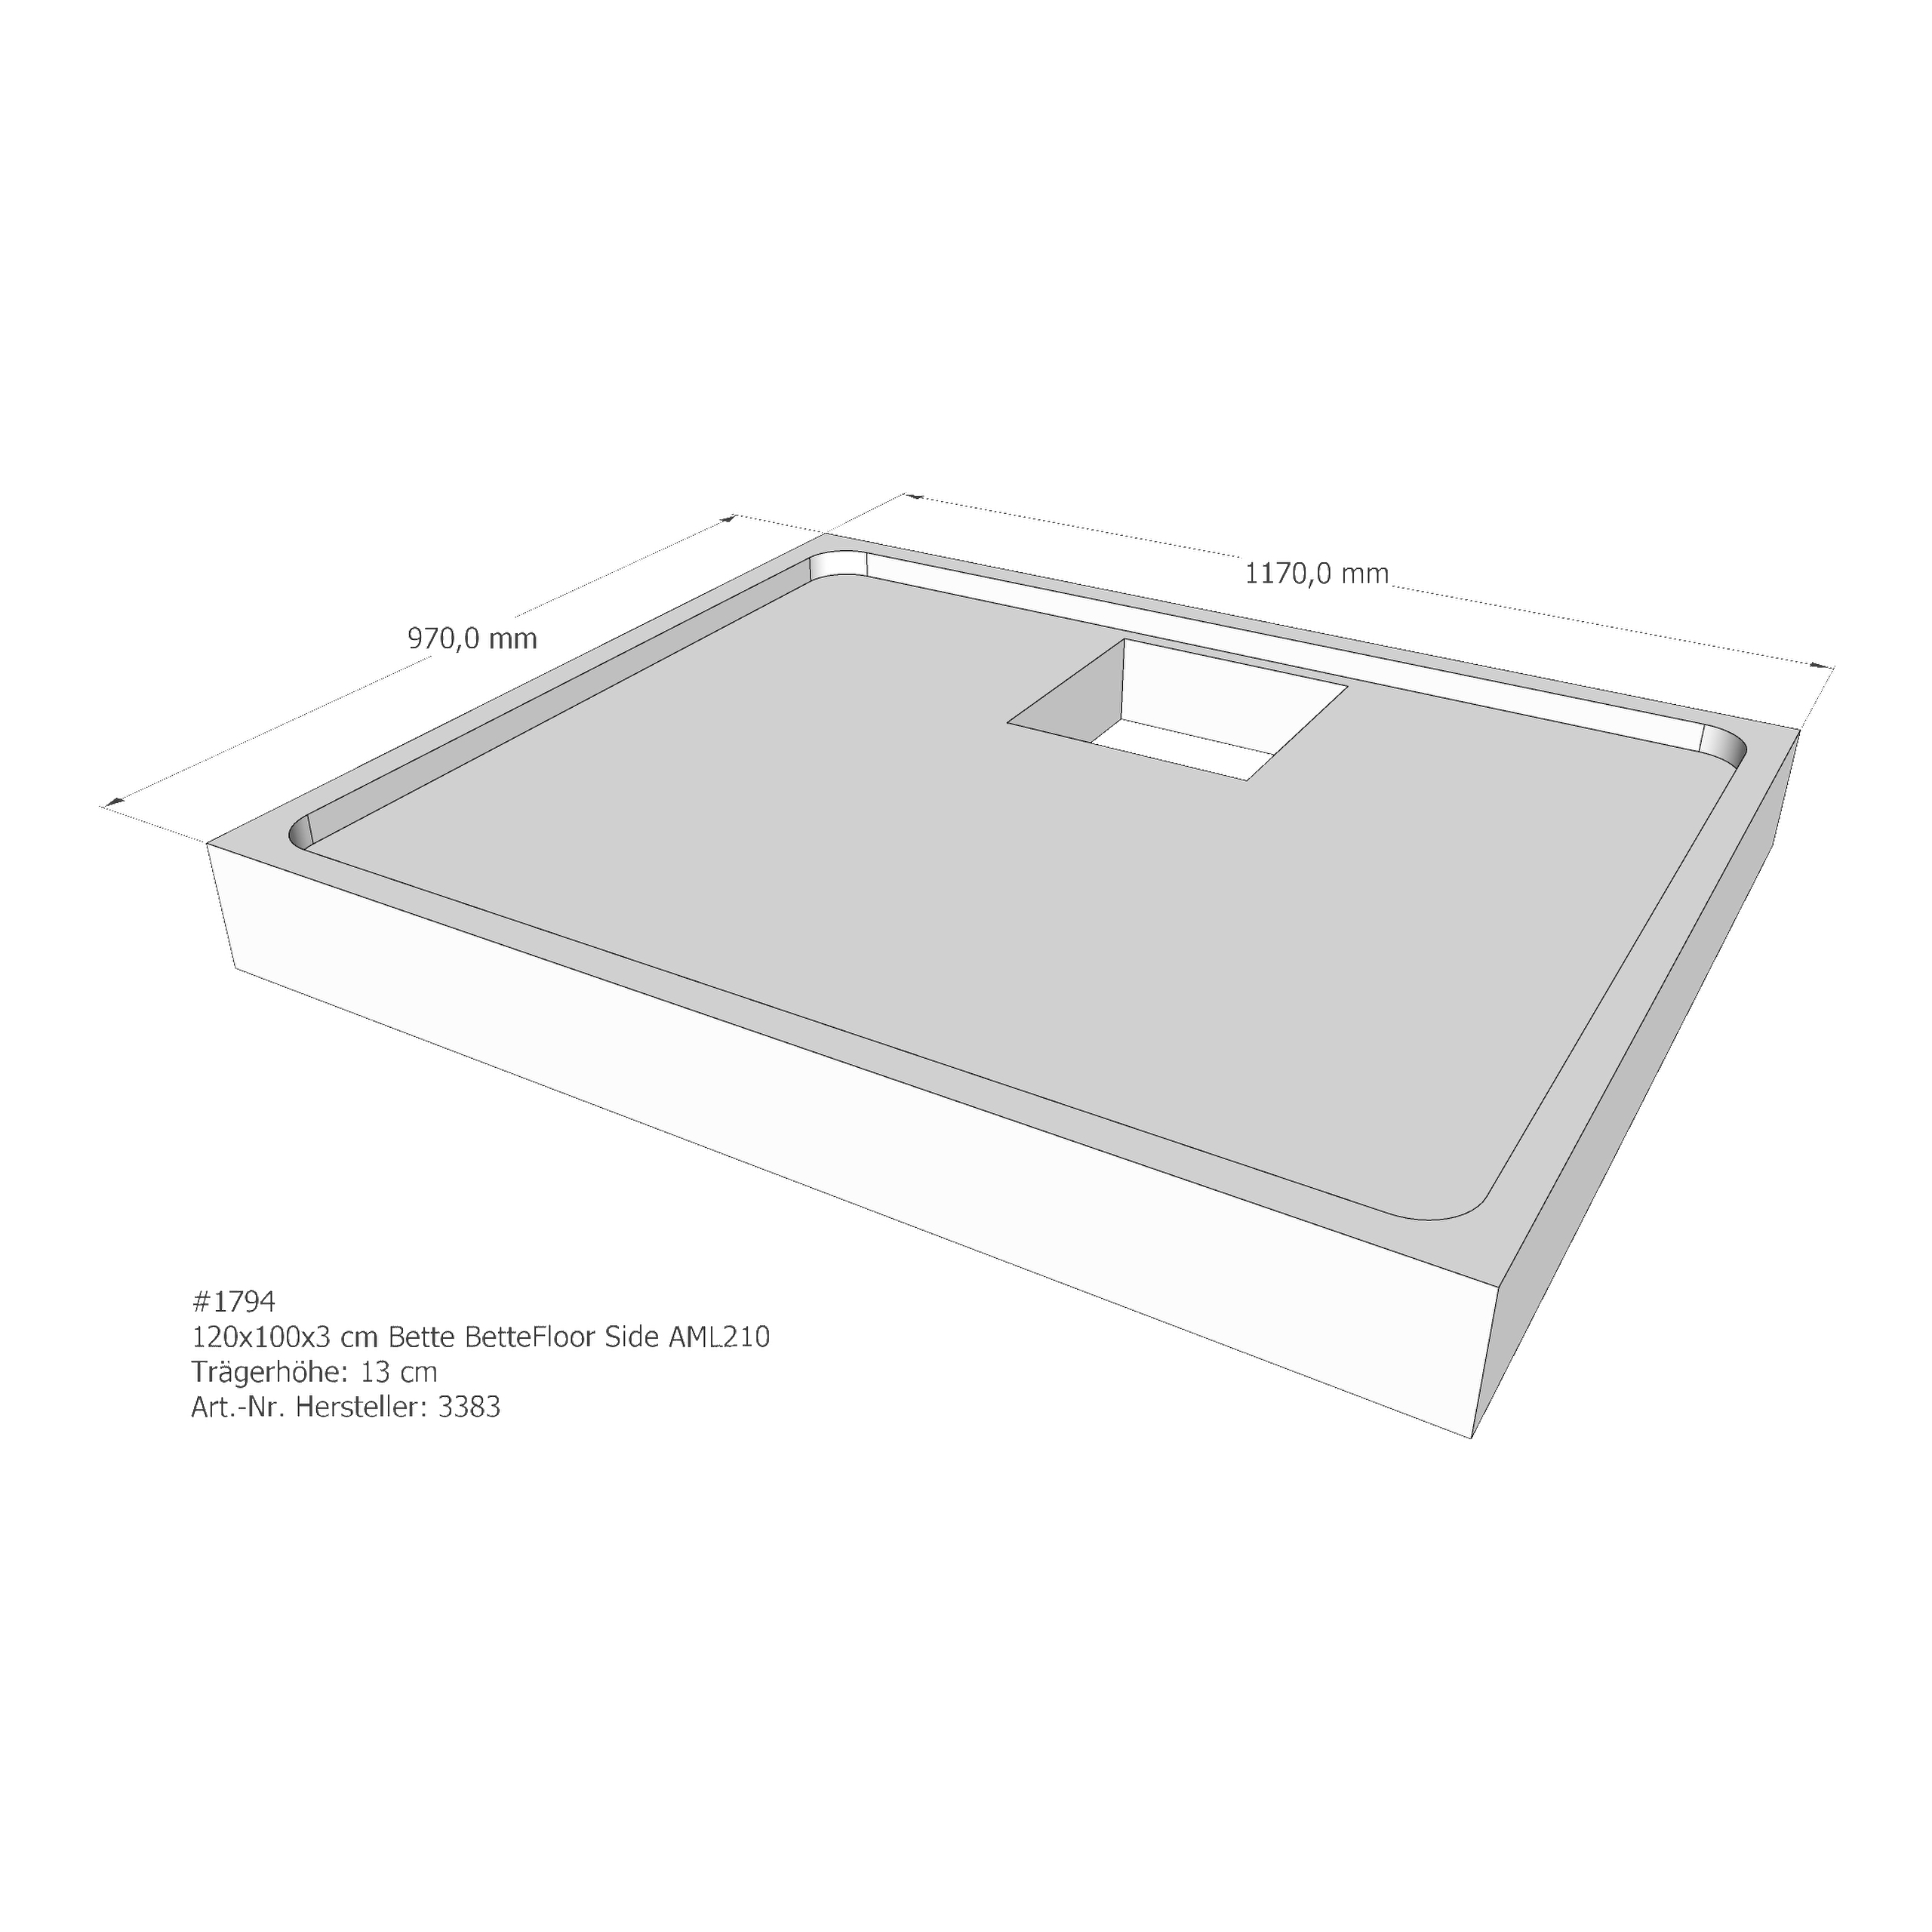 Duschwannenträger Bette BetteFloor Side 120x100x3 cm AML210